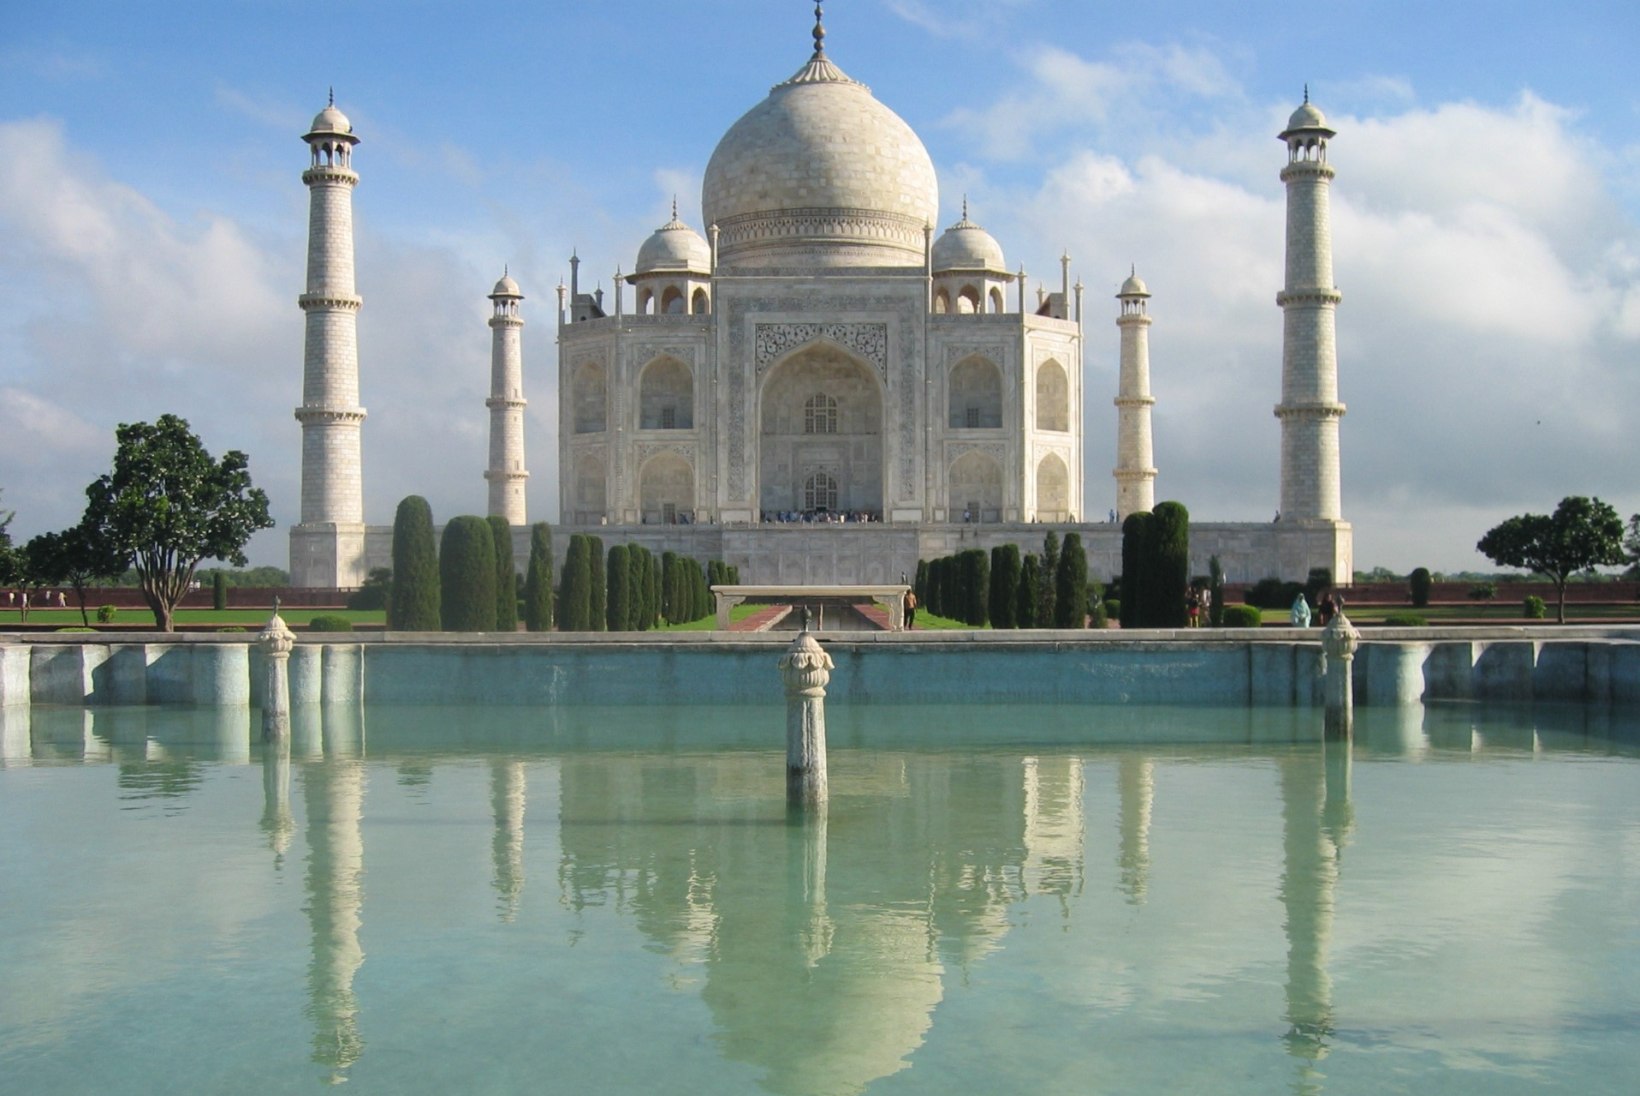 Tāj Mahali lugu: keisrinna viimseks puhkepaigaks sai mausoleum